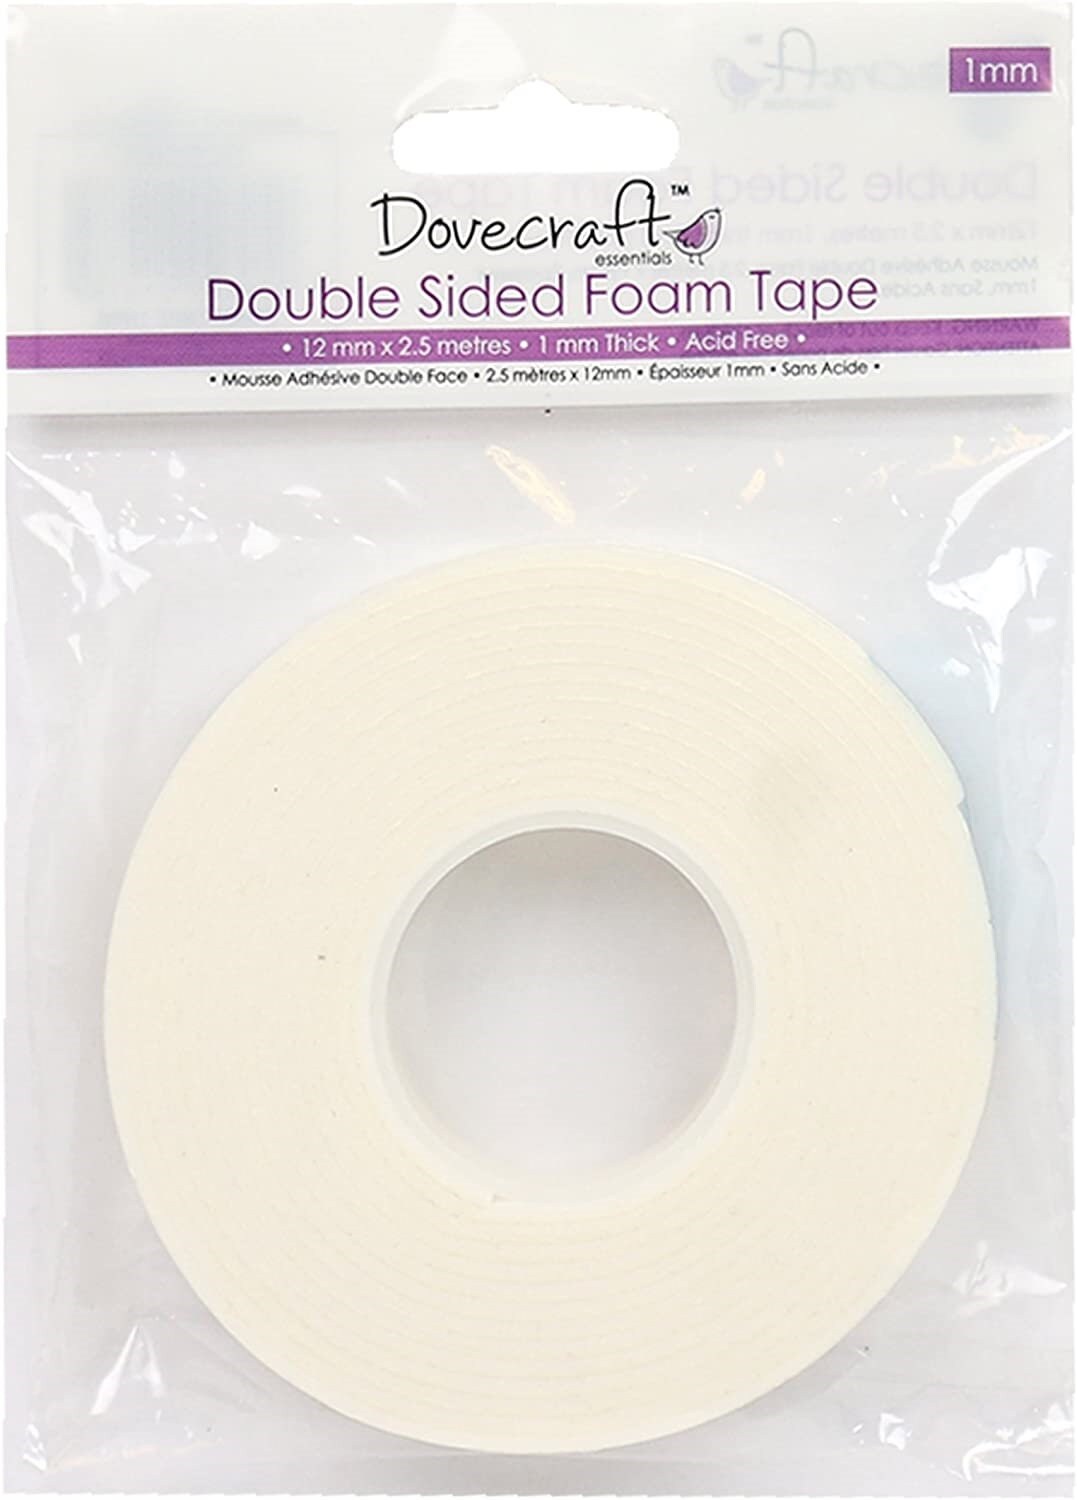 200Pcs 3m Double fold bias Tape Sided White Foam Tape Square